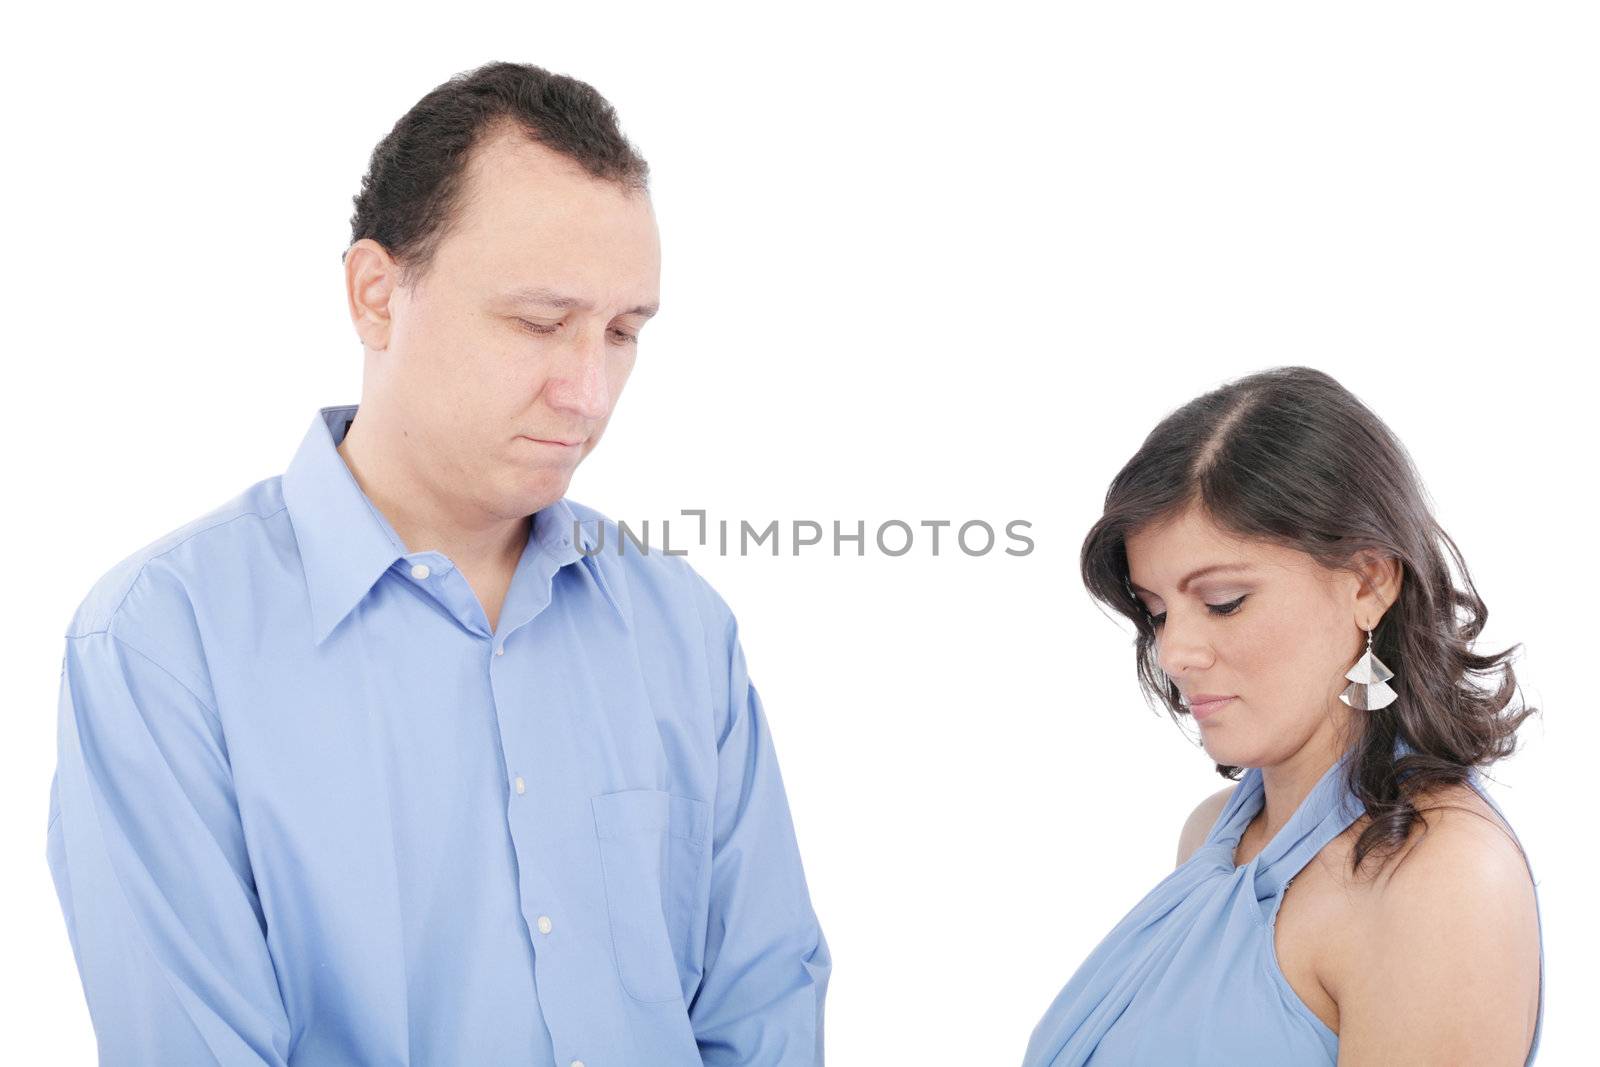 Unhappy couple going through break-up by dacasdo